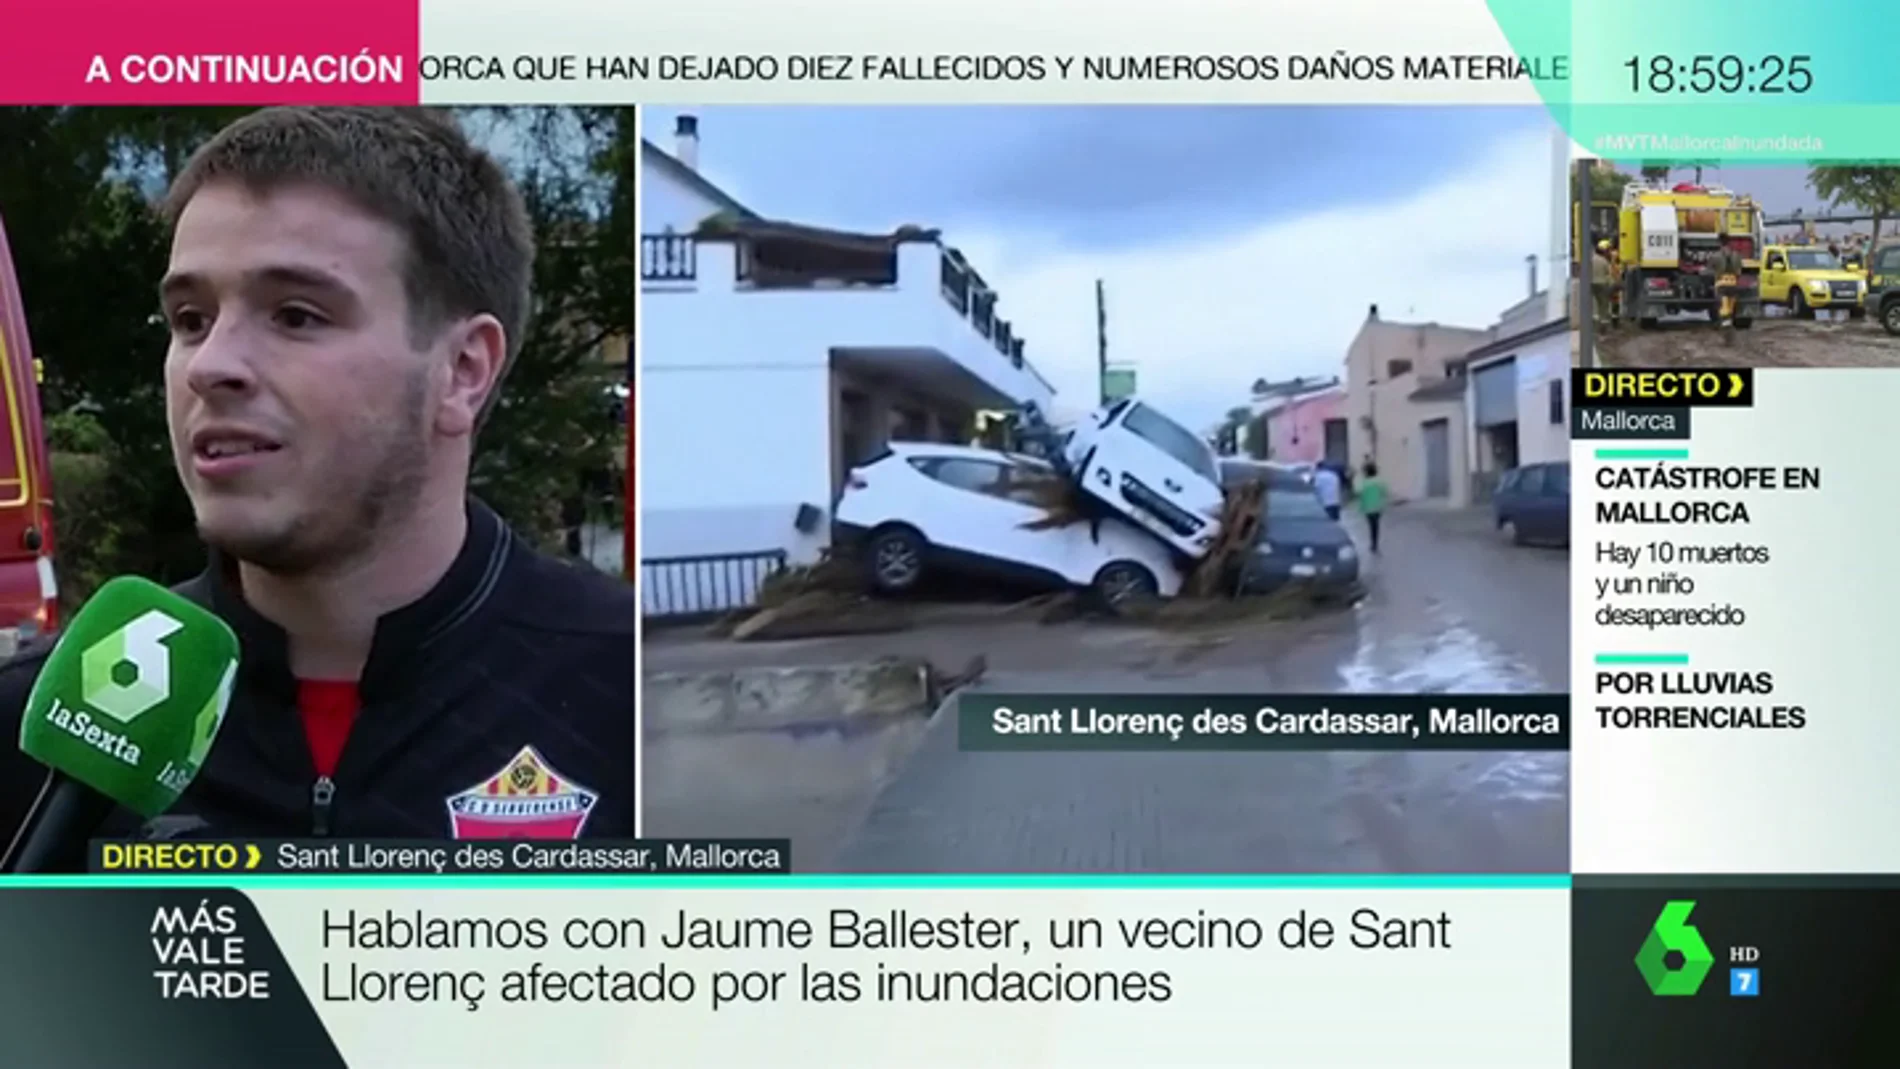 El testimonio de uno de los afectados por las inundaciones en Mallorca: "Todos los vecinos nos echamos a la calle para ayudar"